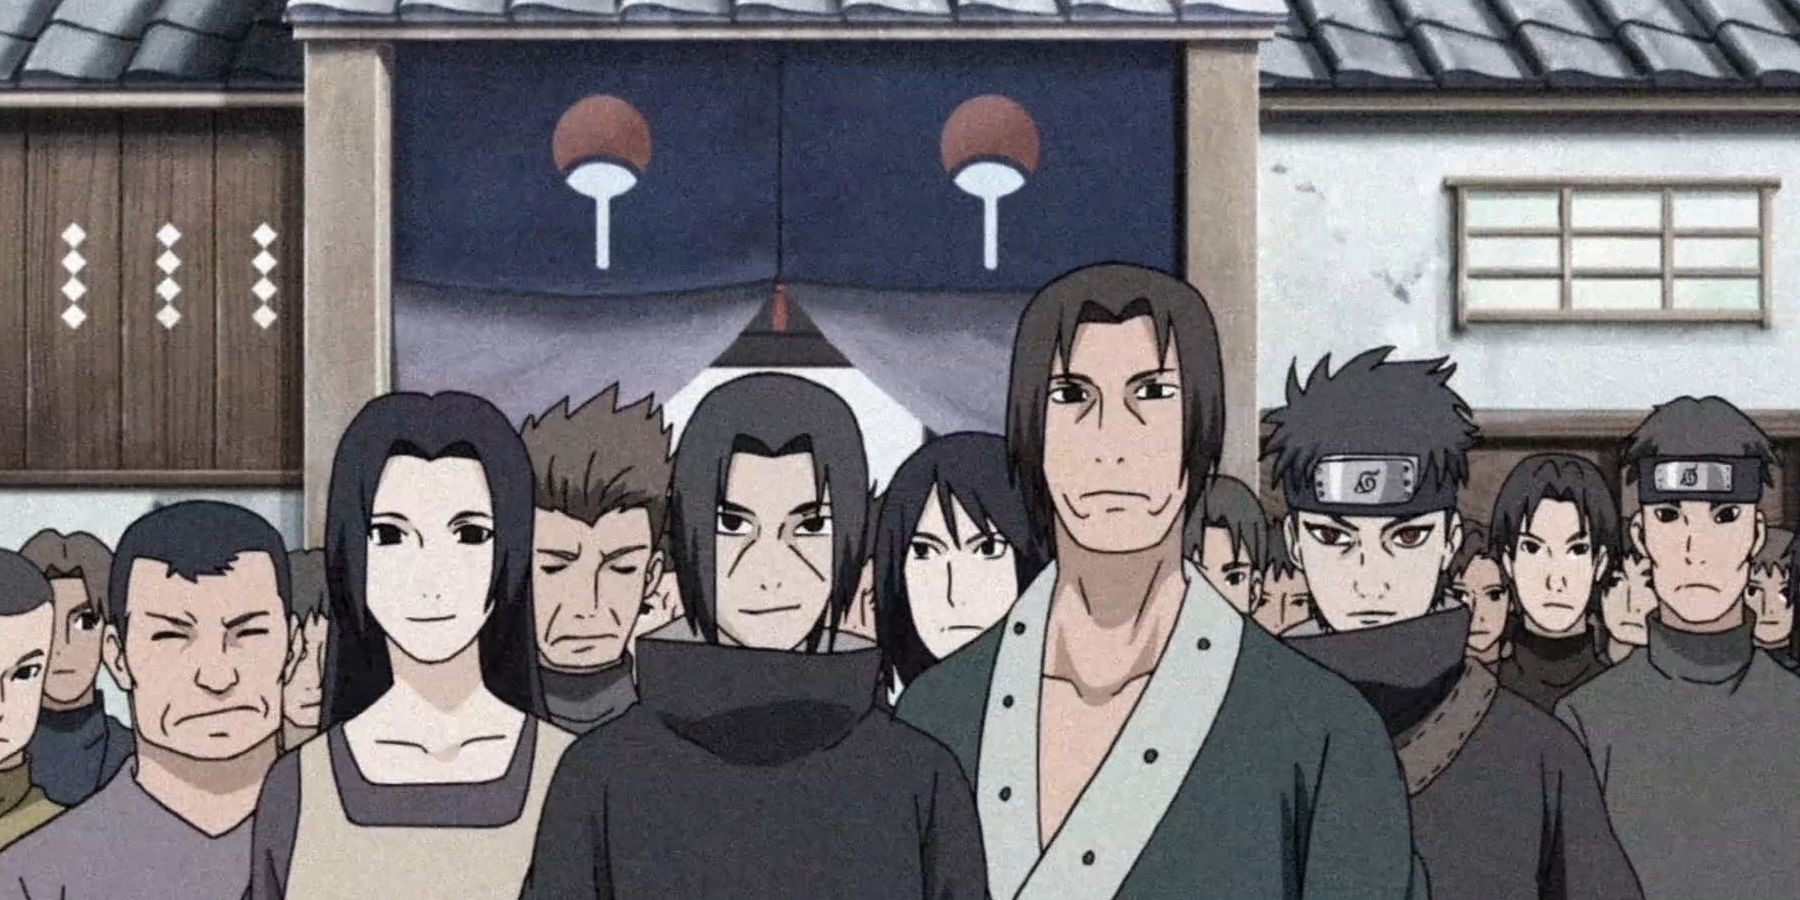 The Uchiha Clan from Naruto